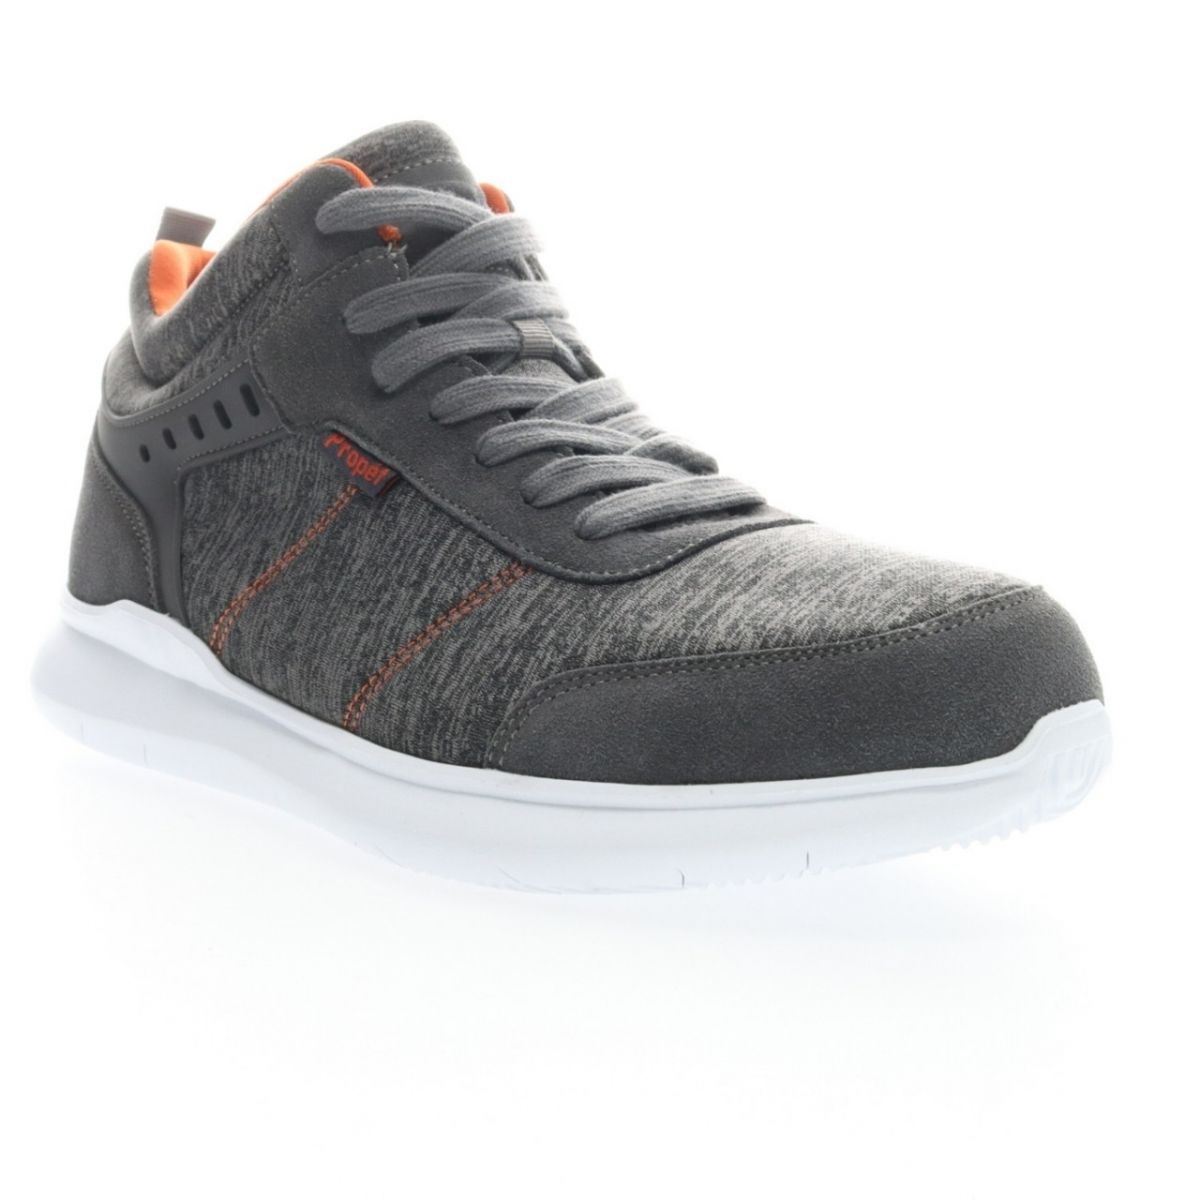 Propet Men's Viator Hi Sneaker Grey/Orange - MAA112MGOR Grey/orange - Grey/orange, 14 XX-Wide